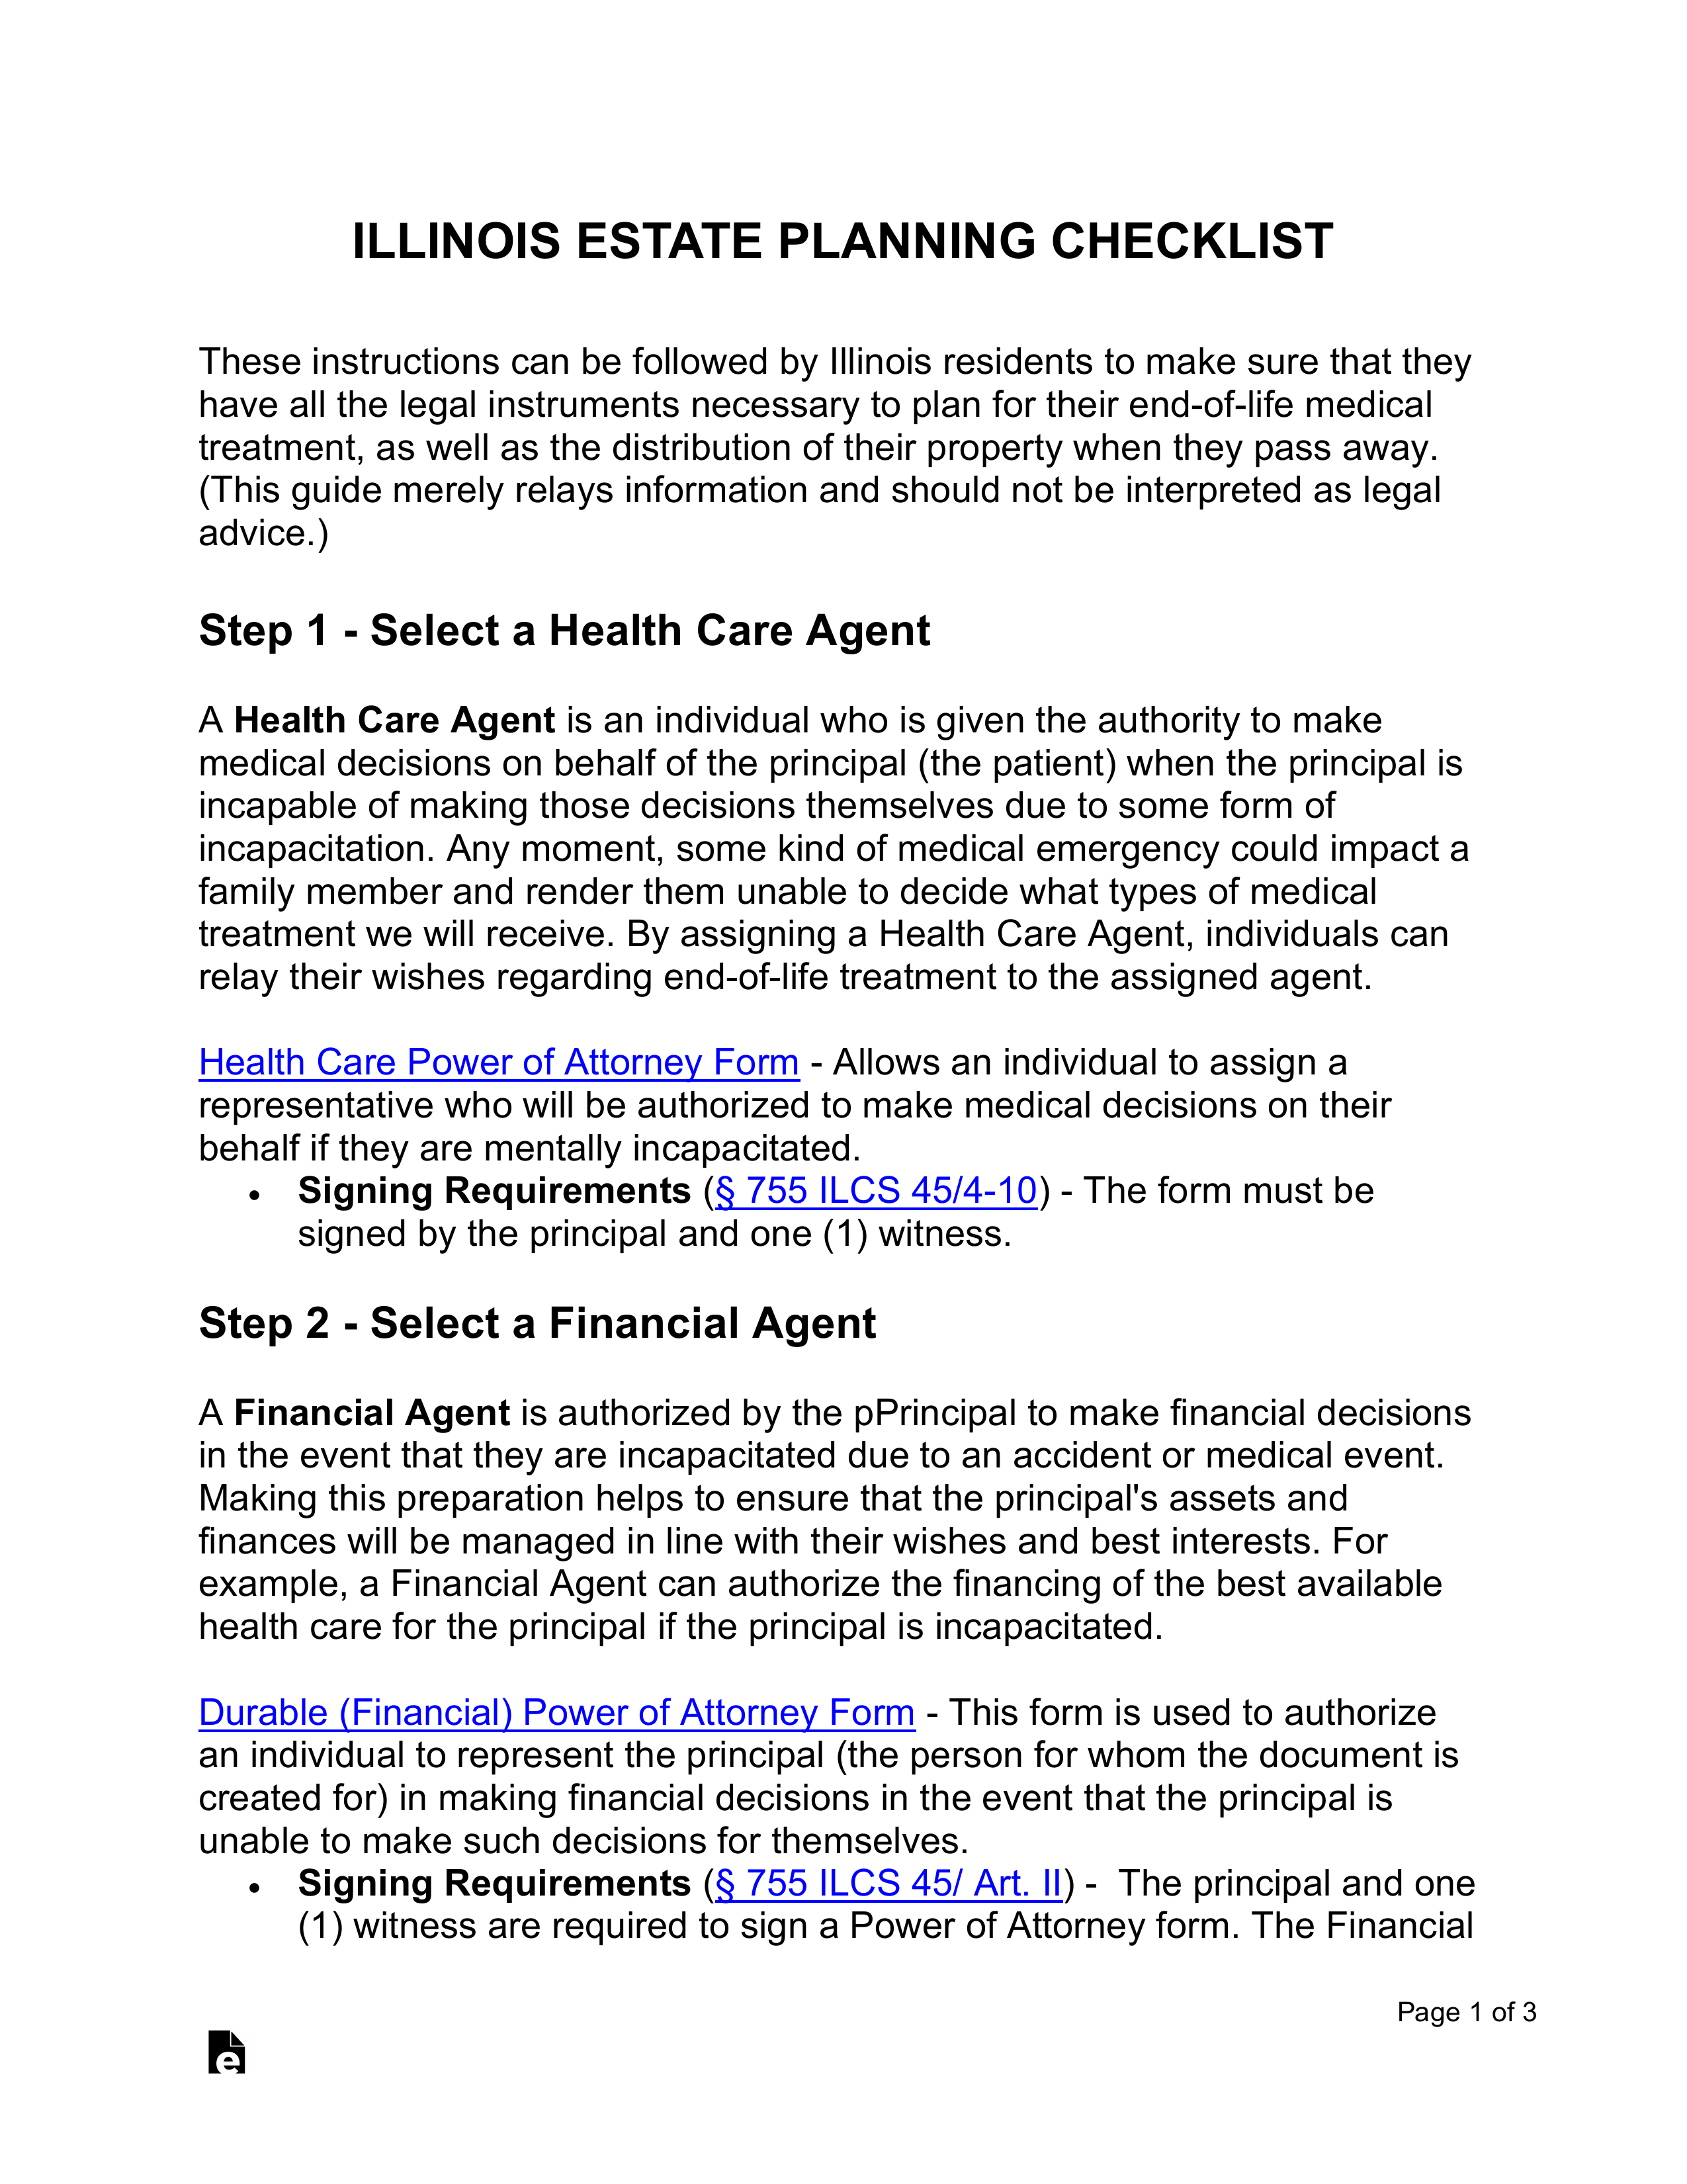 Illinois Estate Planning Checklist